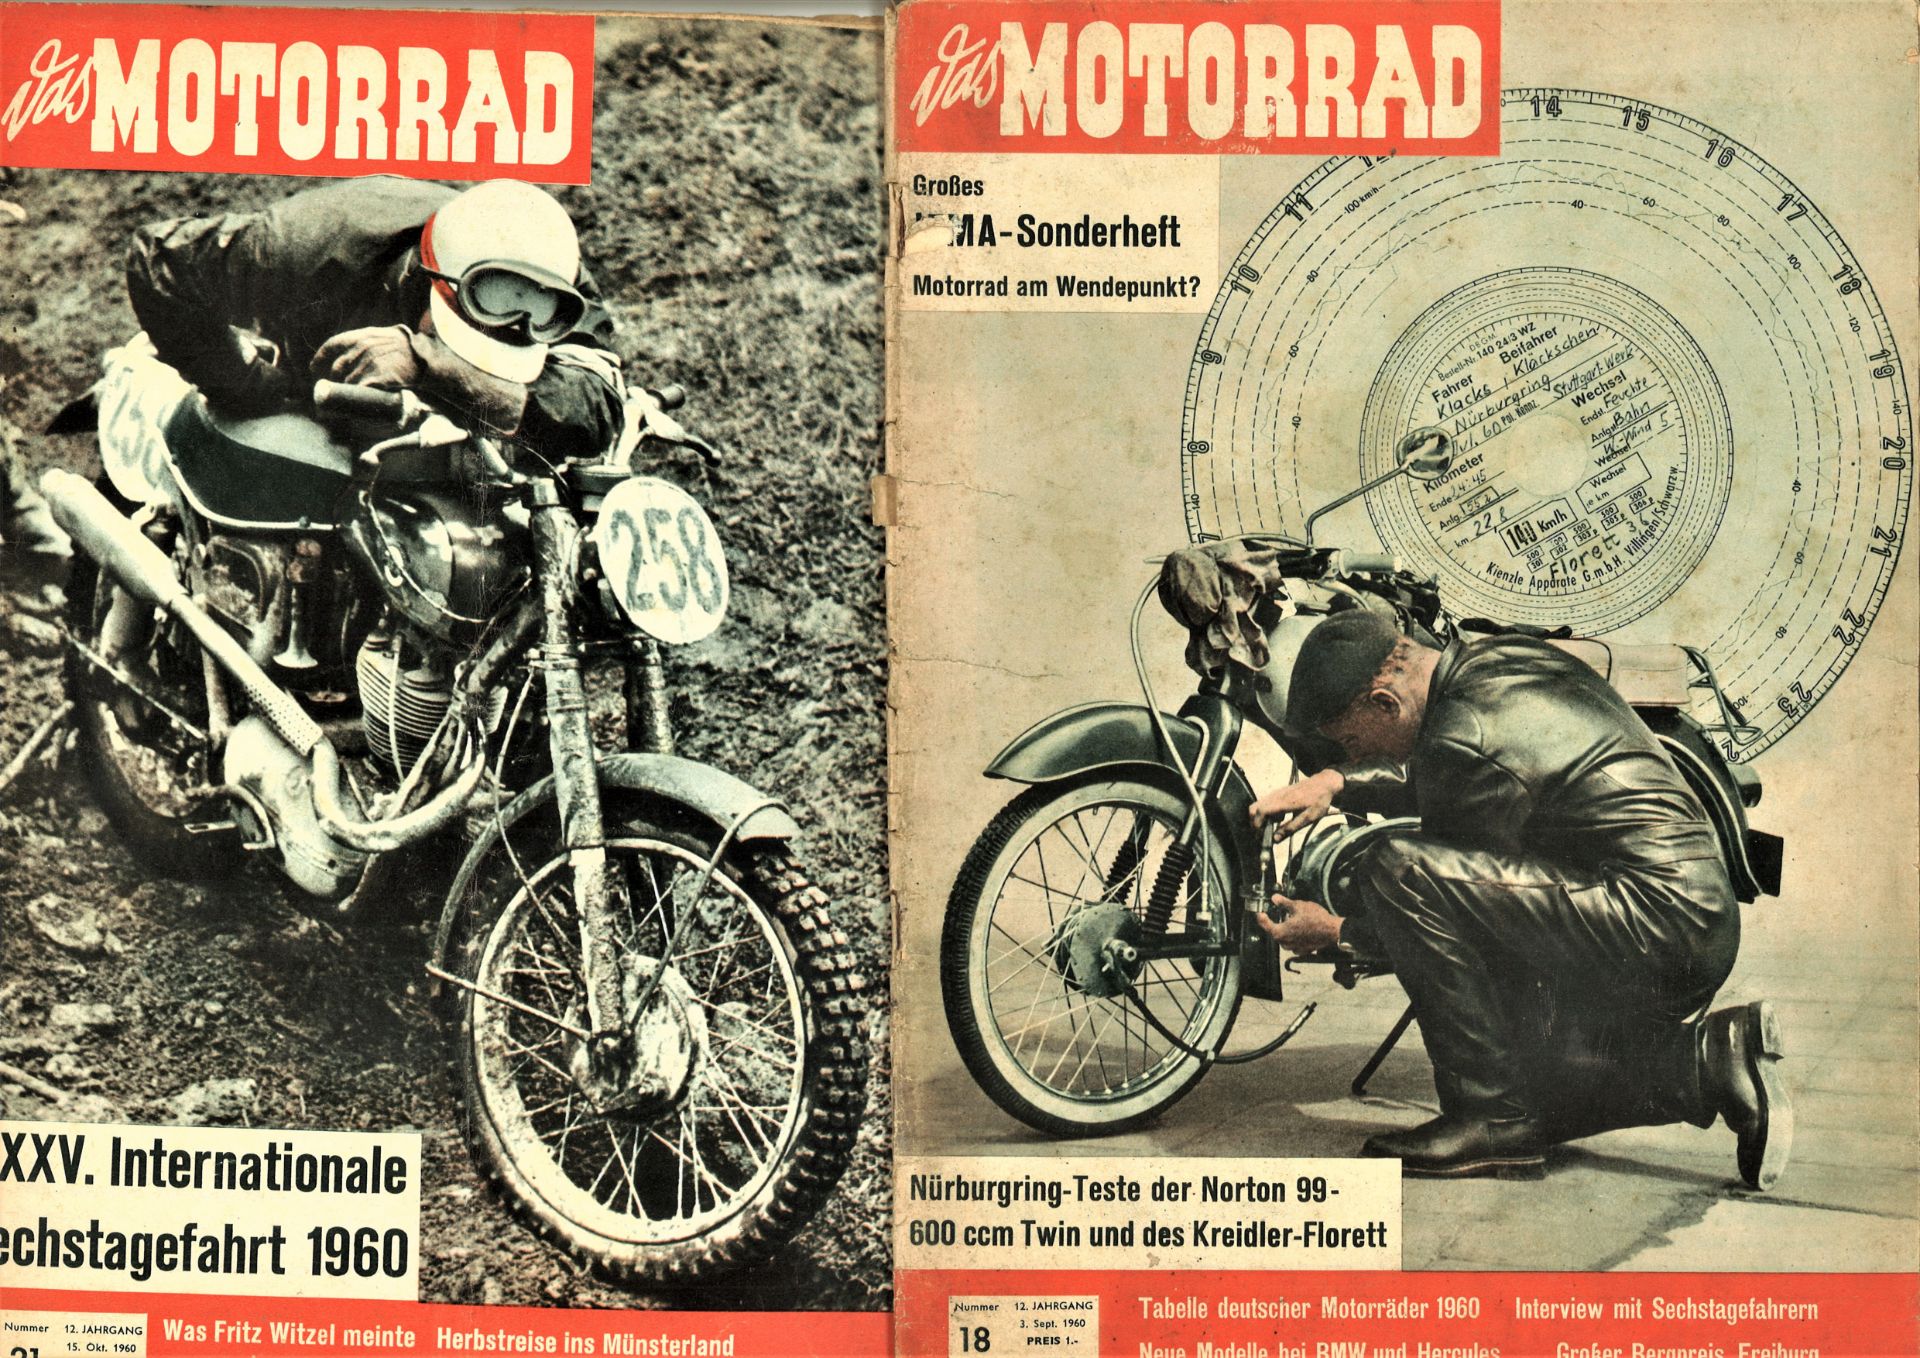 Das Motorrad, Magazin, hier 12. Jahrgang, 1960, Nr. 5, 12, 18, 21, 22, 24, 25 und 26 - Bild 2 aus 5